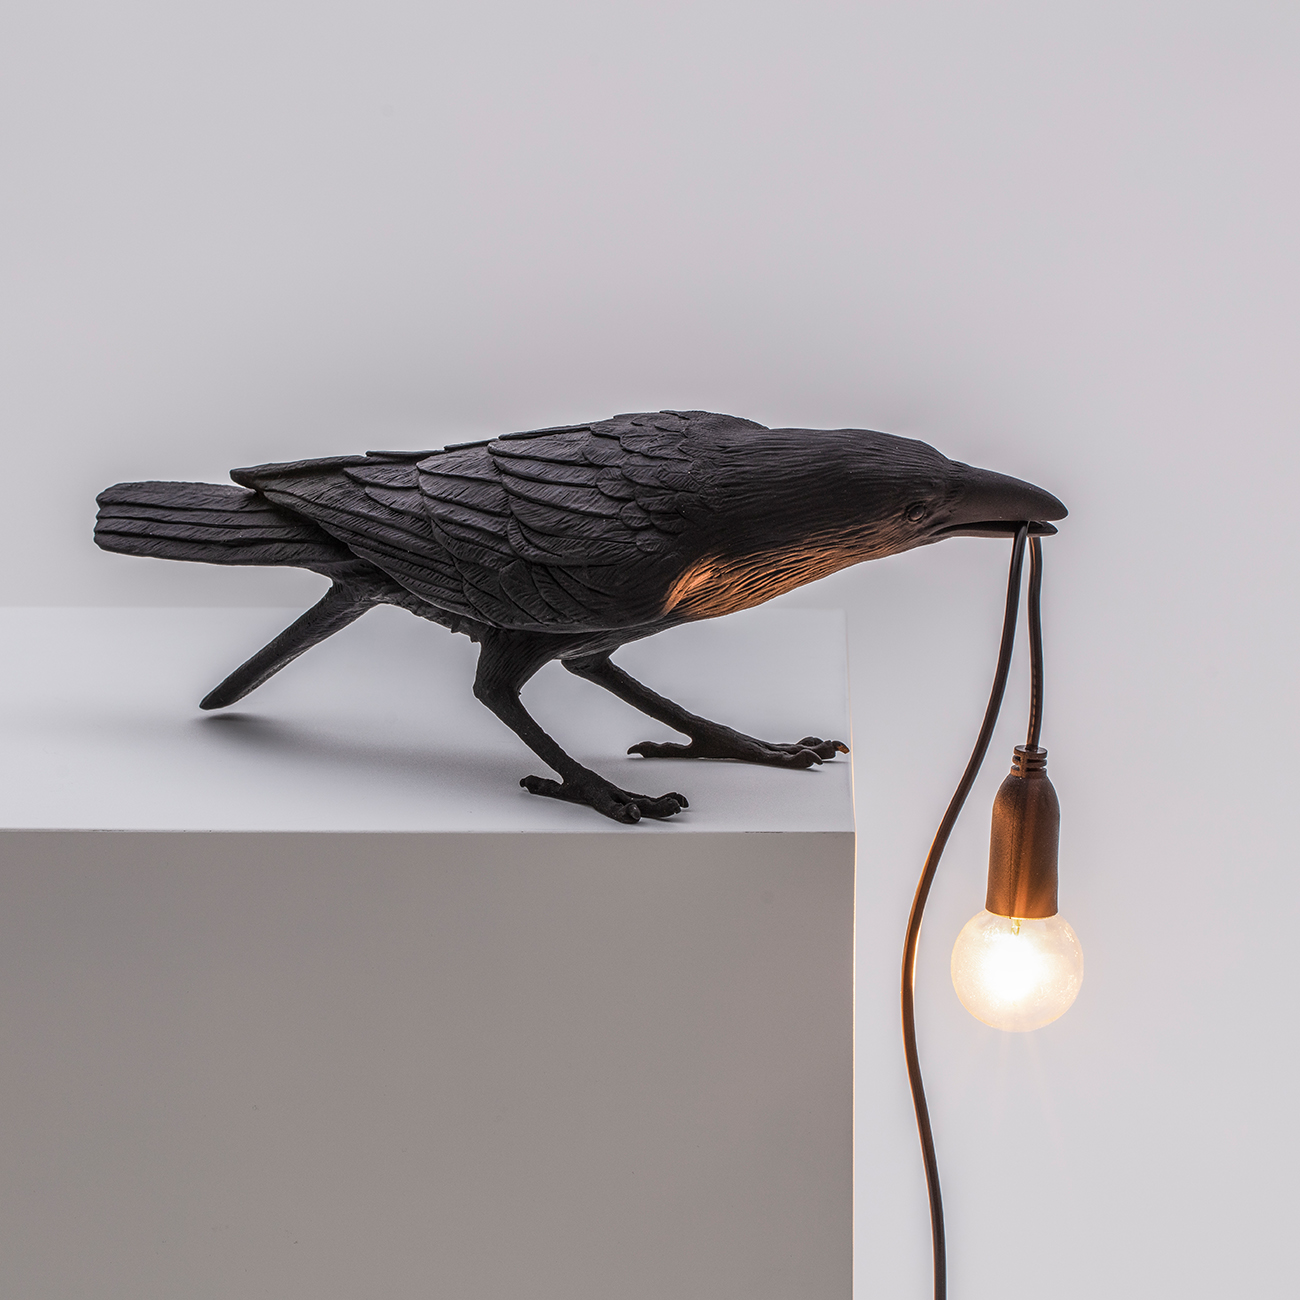 BIRD LAMP - Marcantonio design